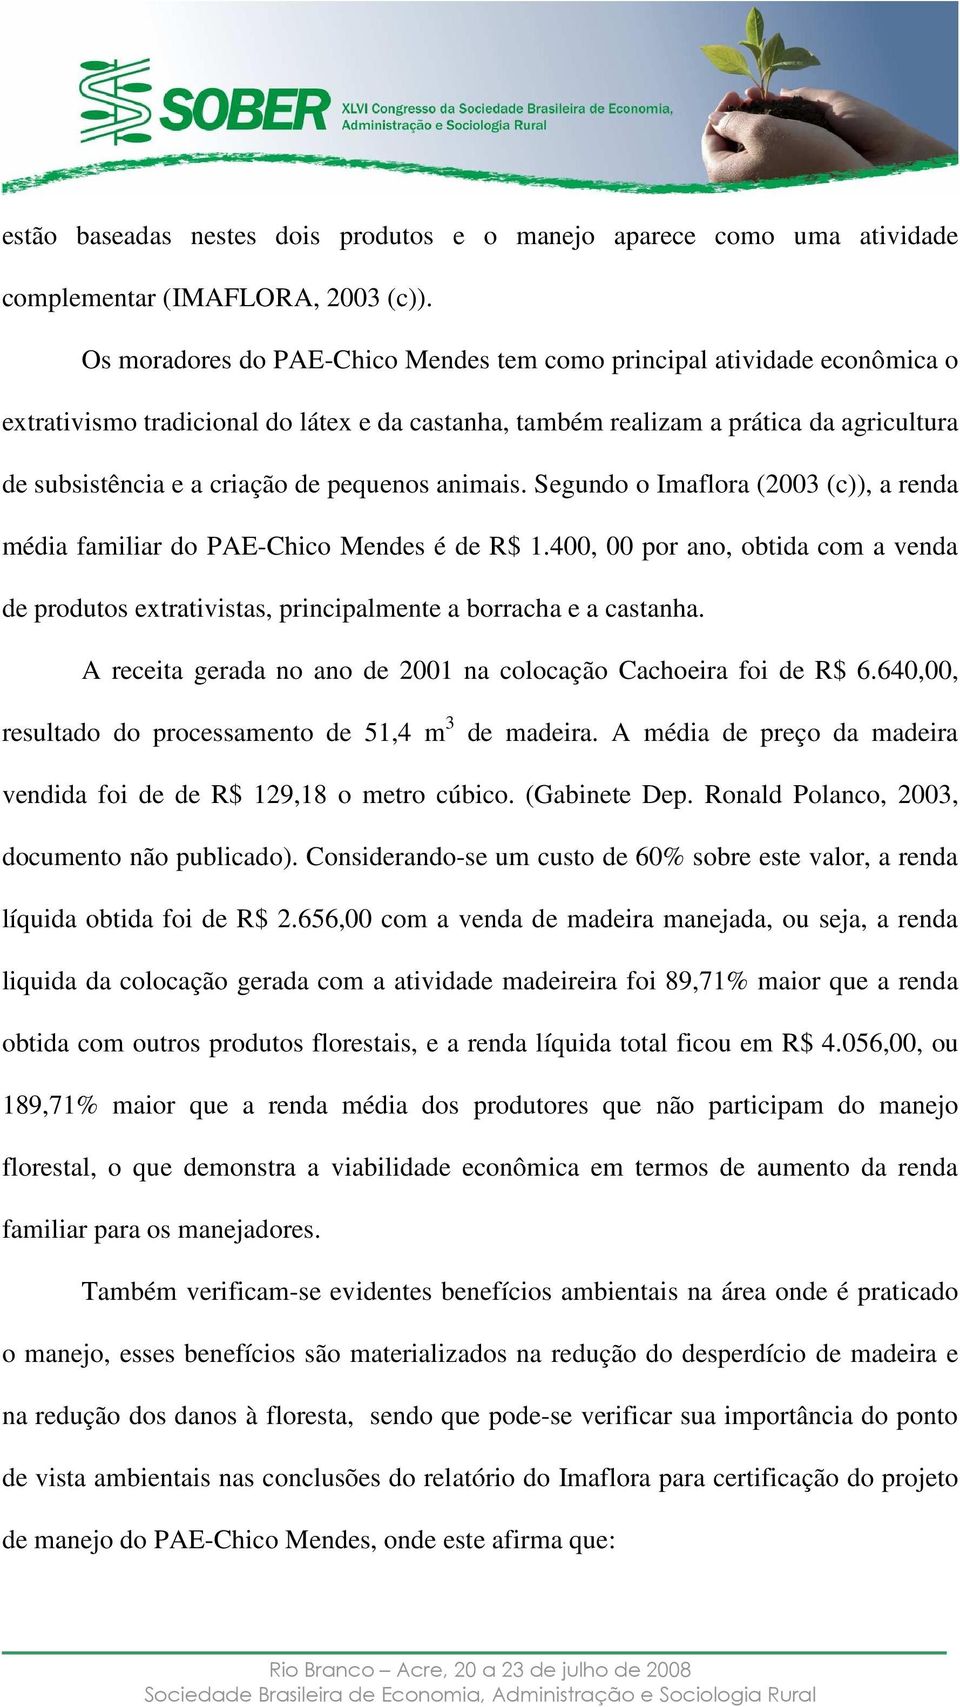 pequenos animais. Segundo o Imaflora (2003 (c)), a renda média familiar do PAE-Chico Mendes é de R$ 1.